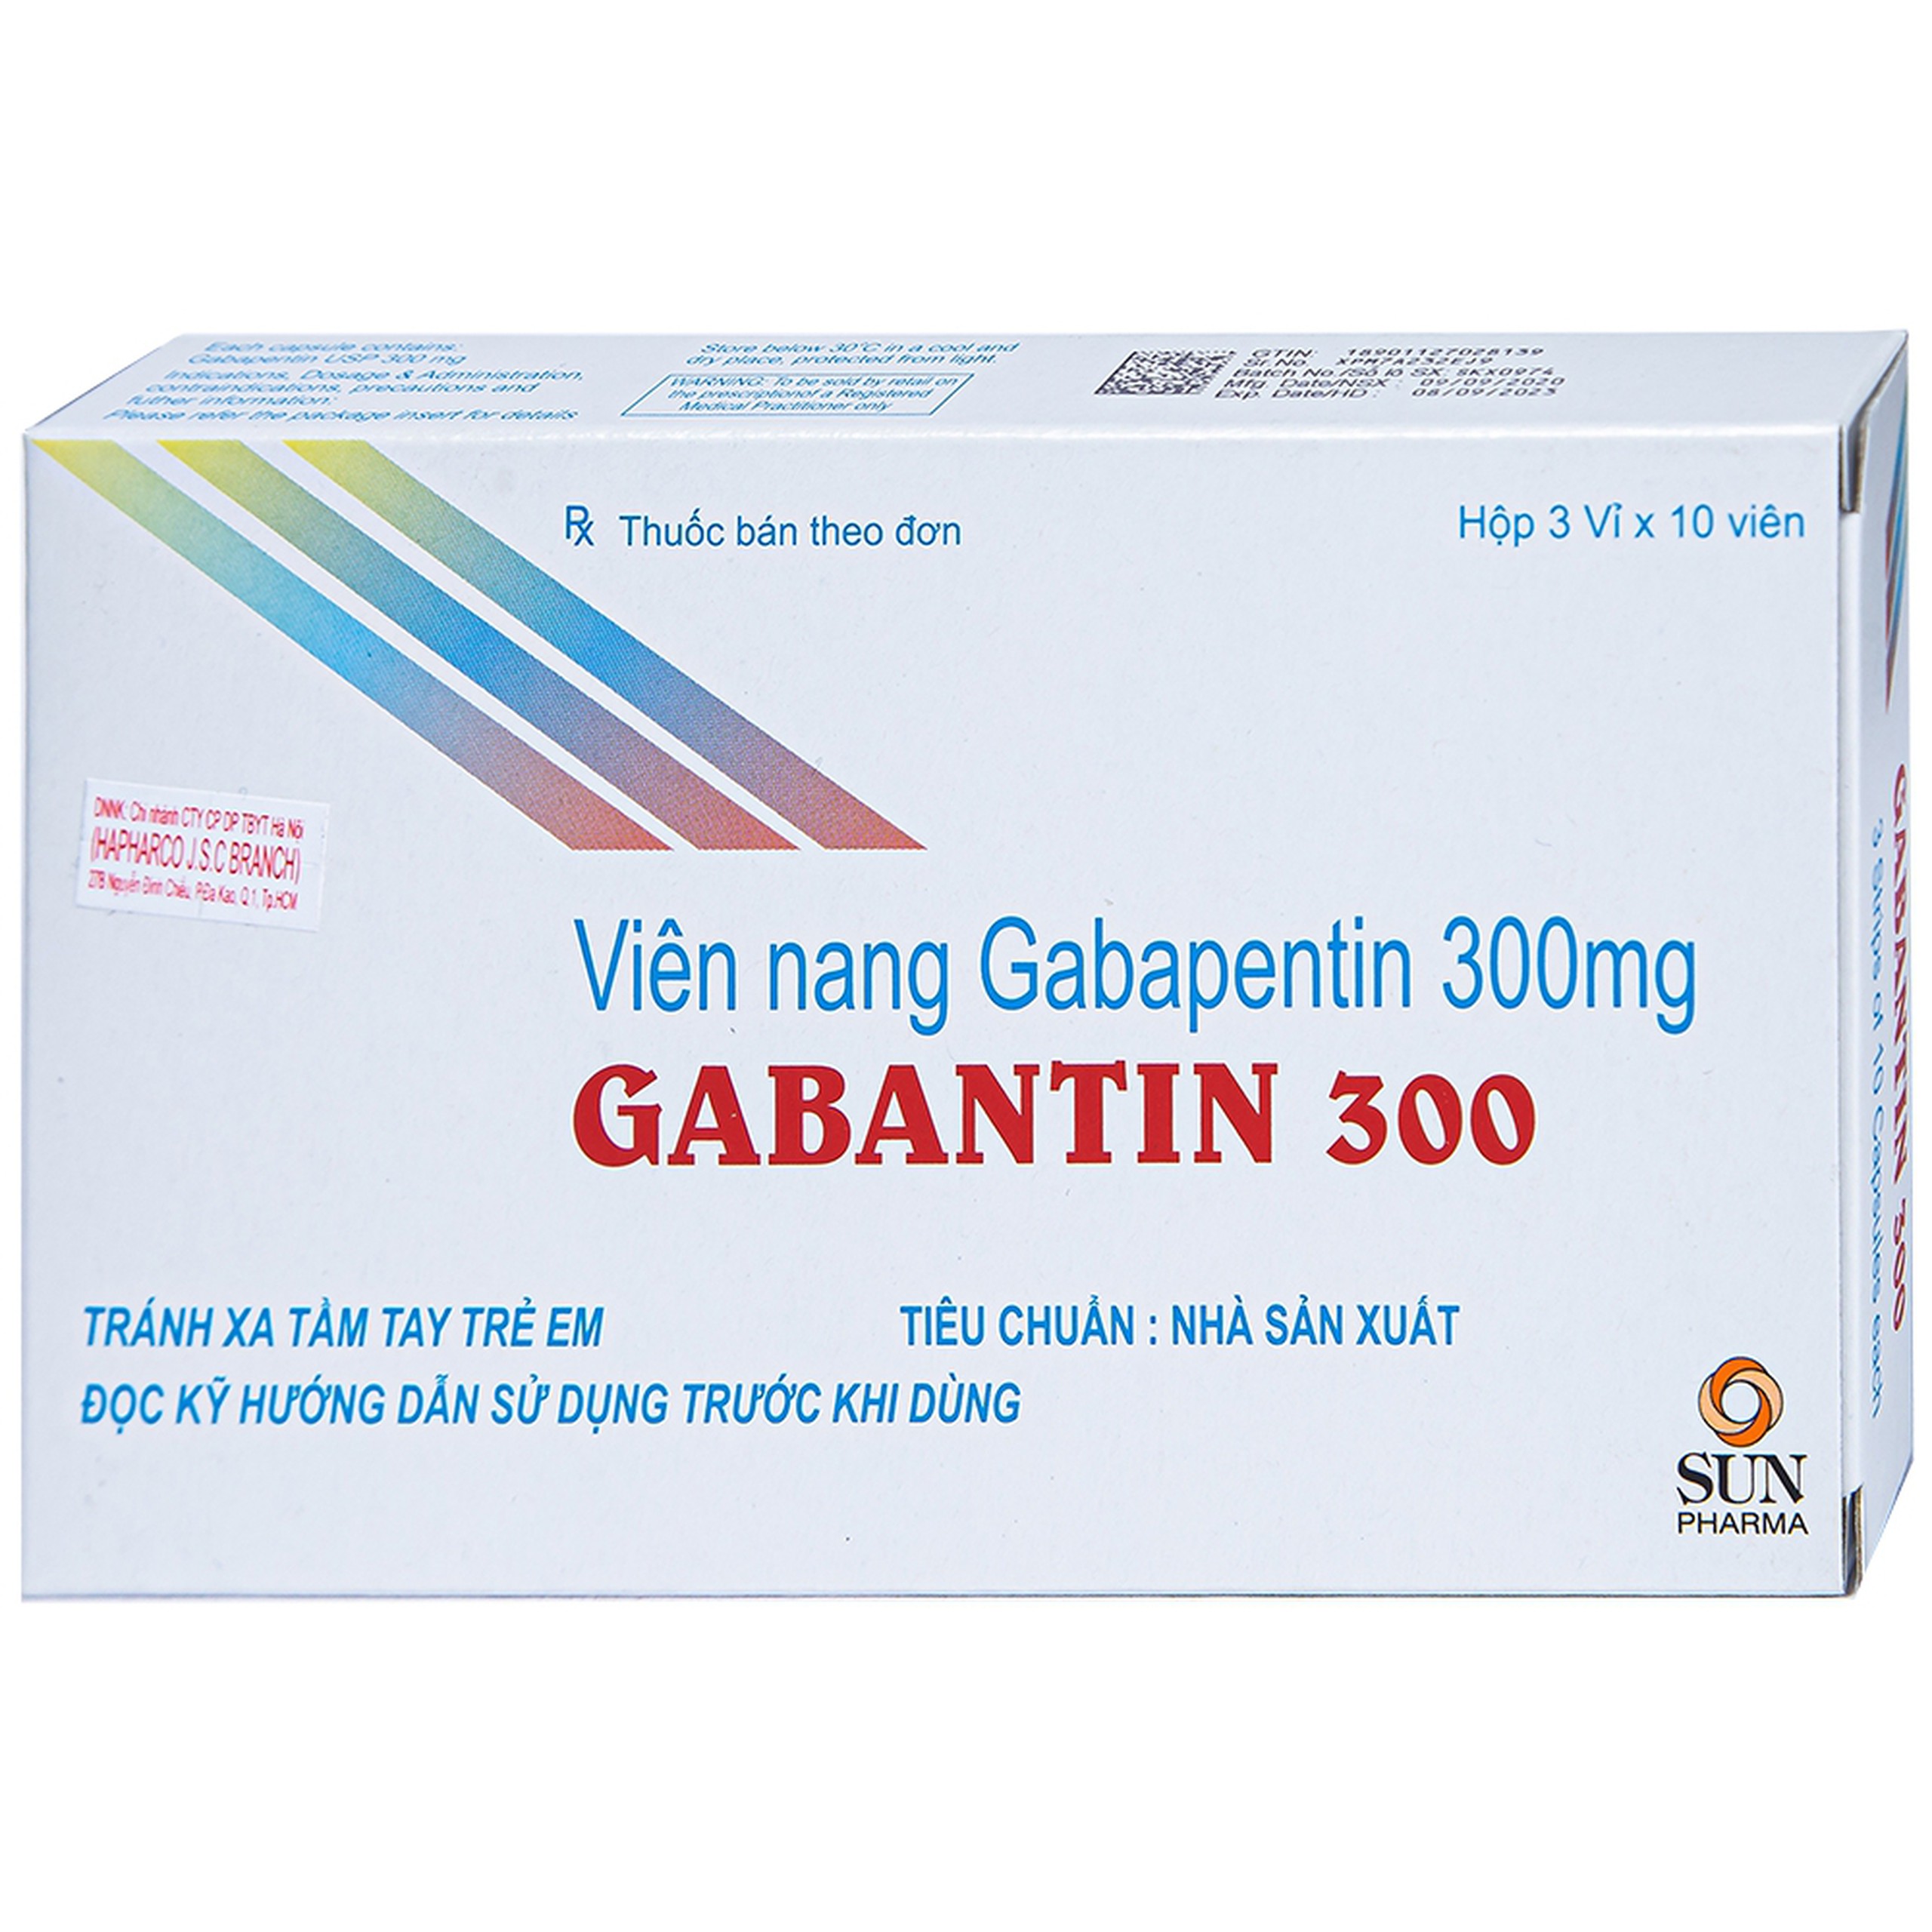 Thuốc Gabantin 300 Sun Pharma điều trị đau thần kinh sau khi nhiễm herpes (3 vỉ x 10 viên)